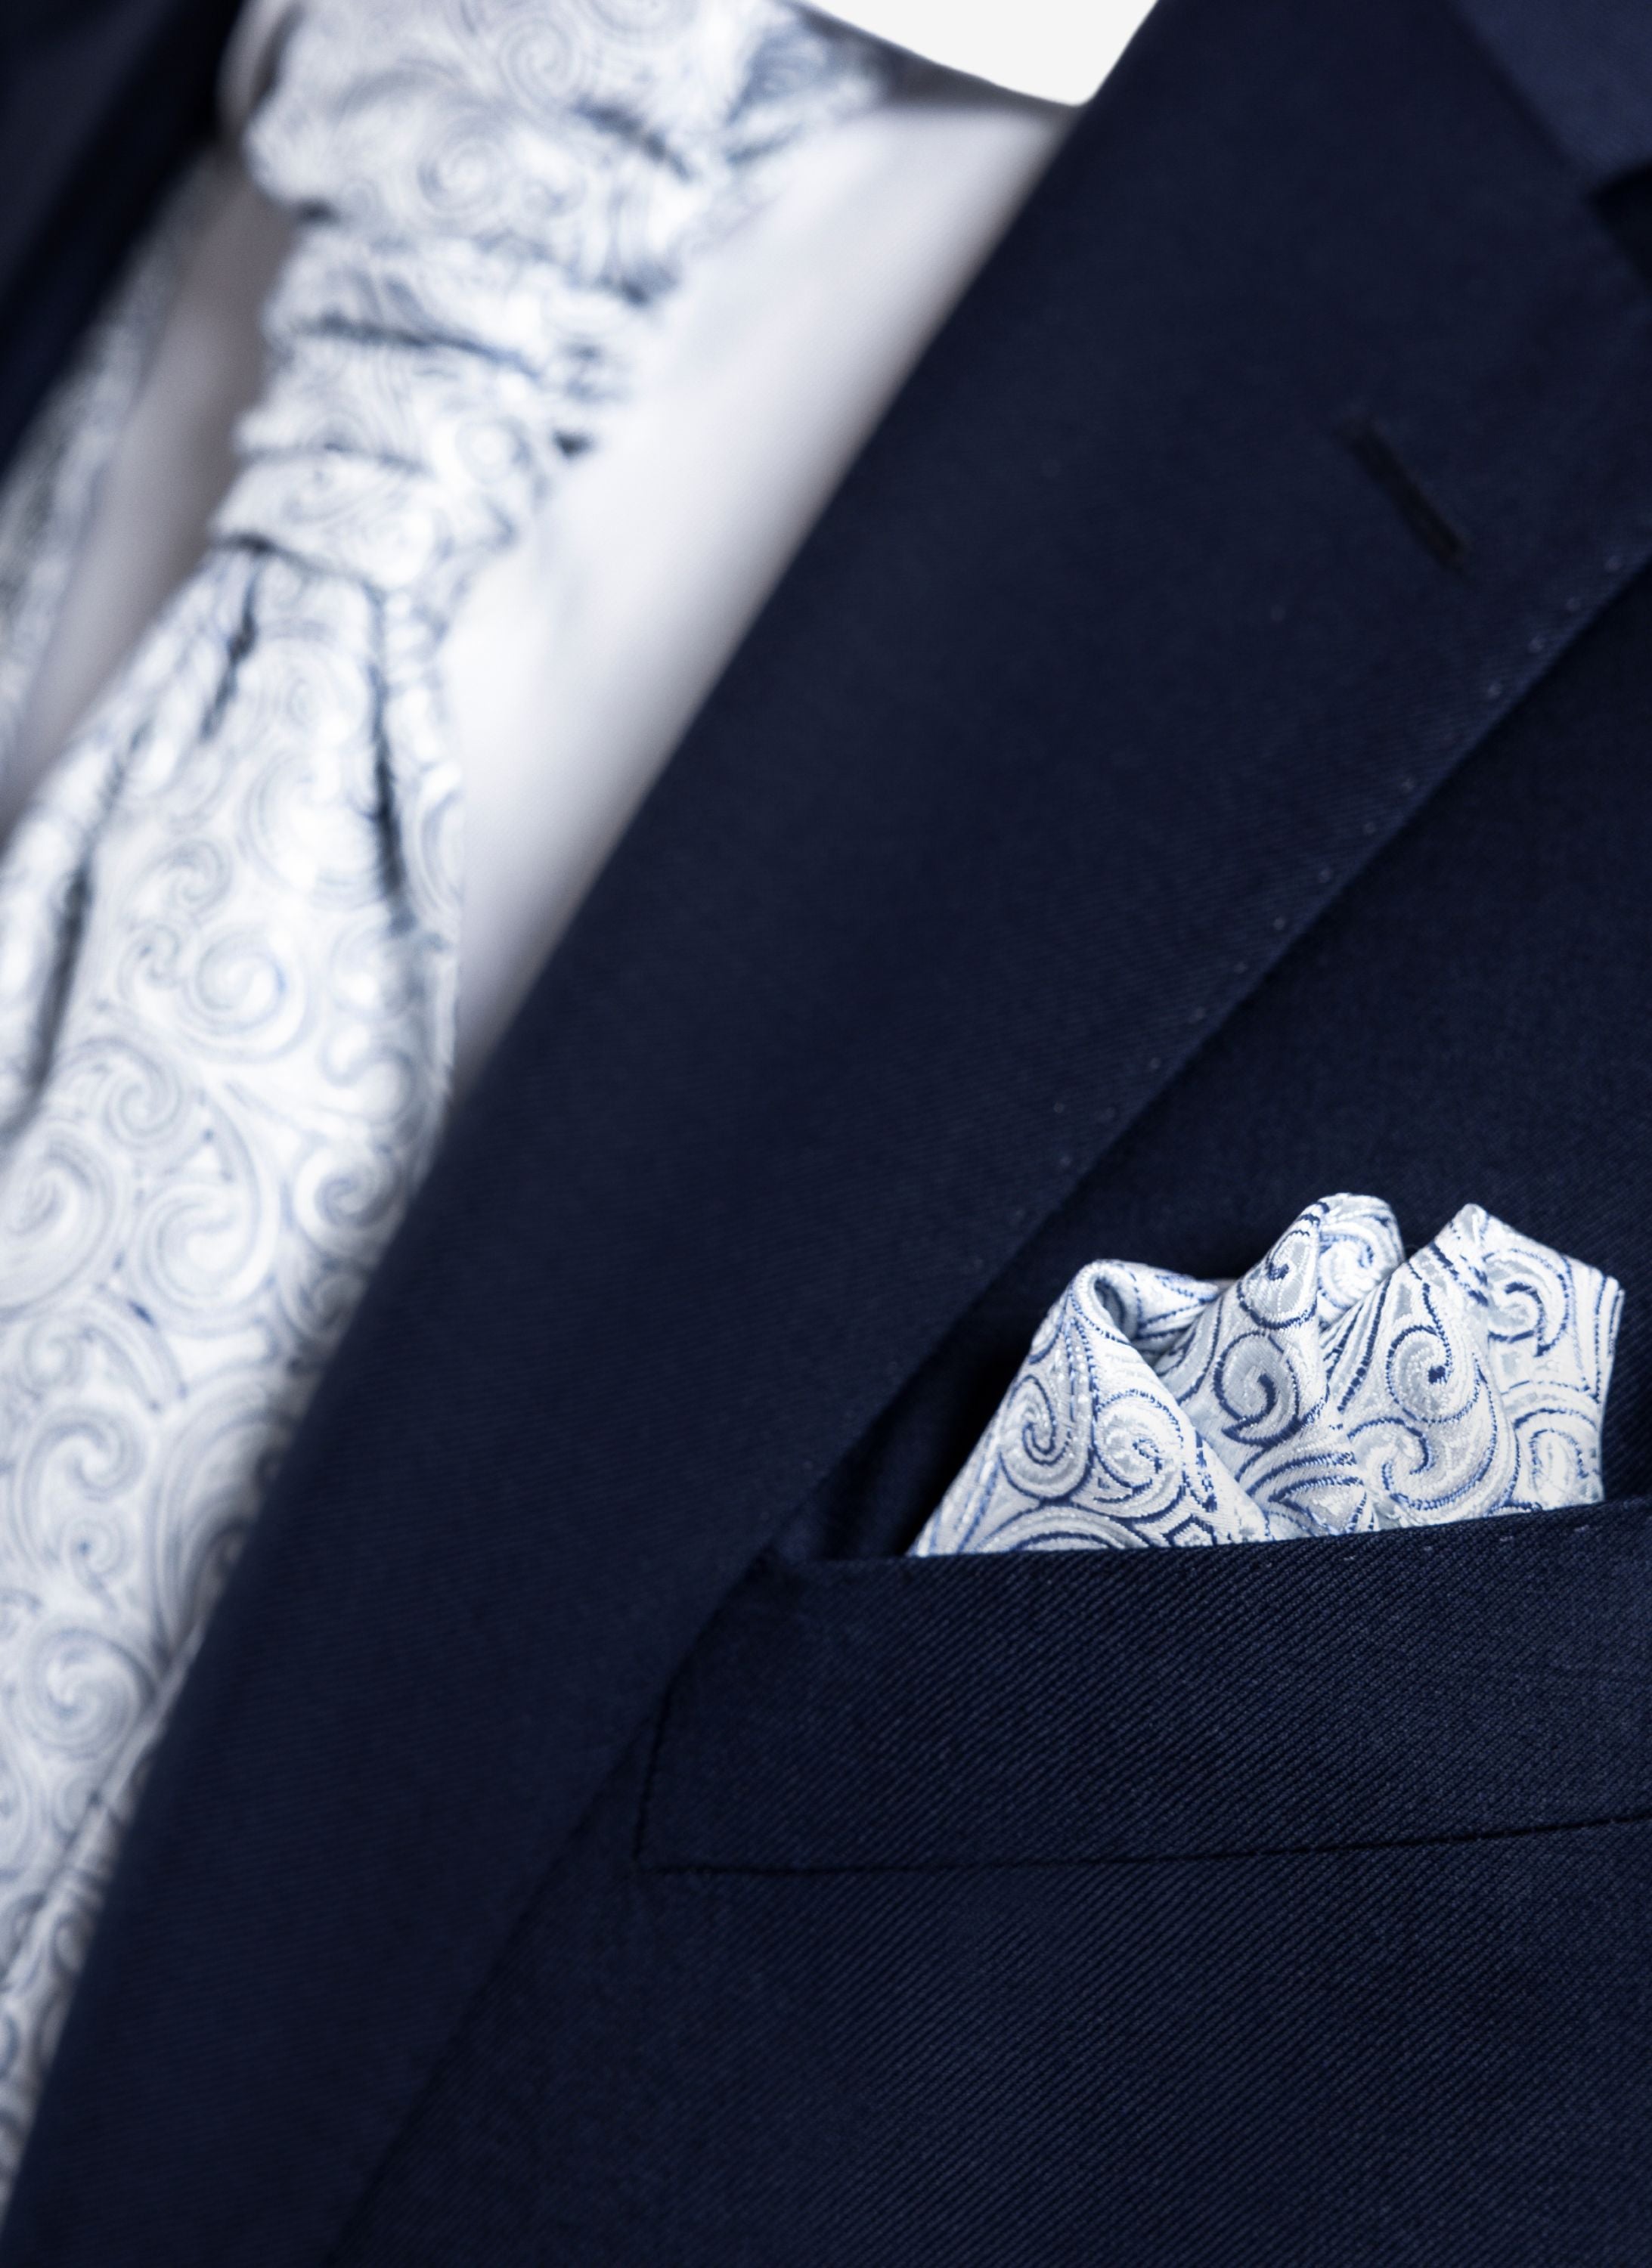 Hellblaues Hochzeitseinstecktuch in blauem Anzug.